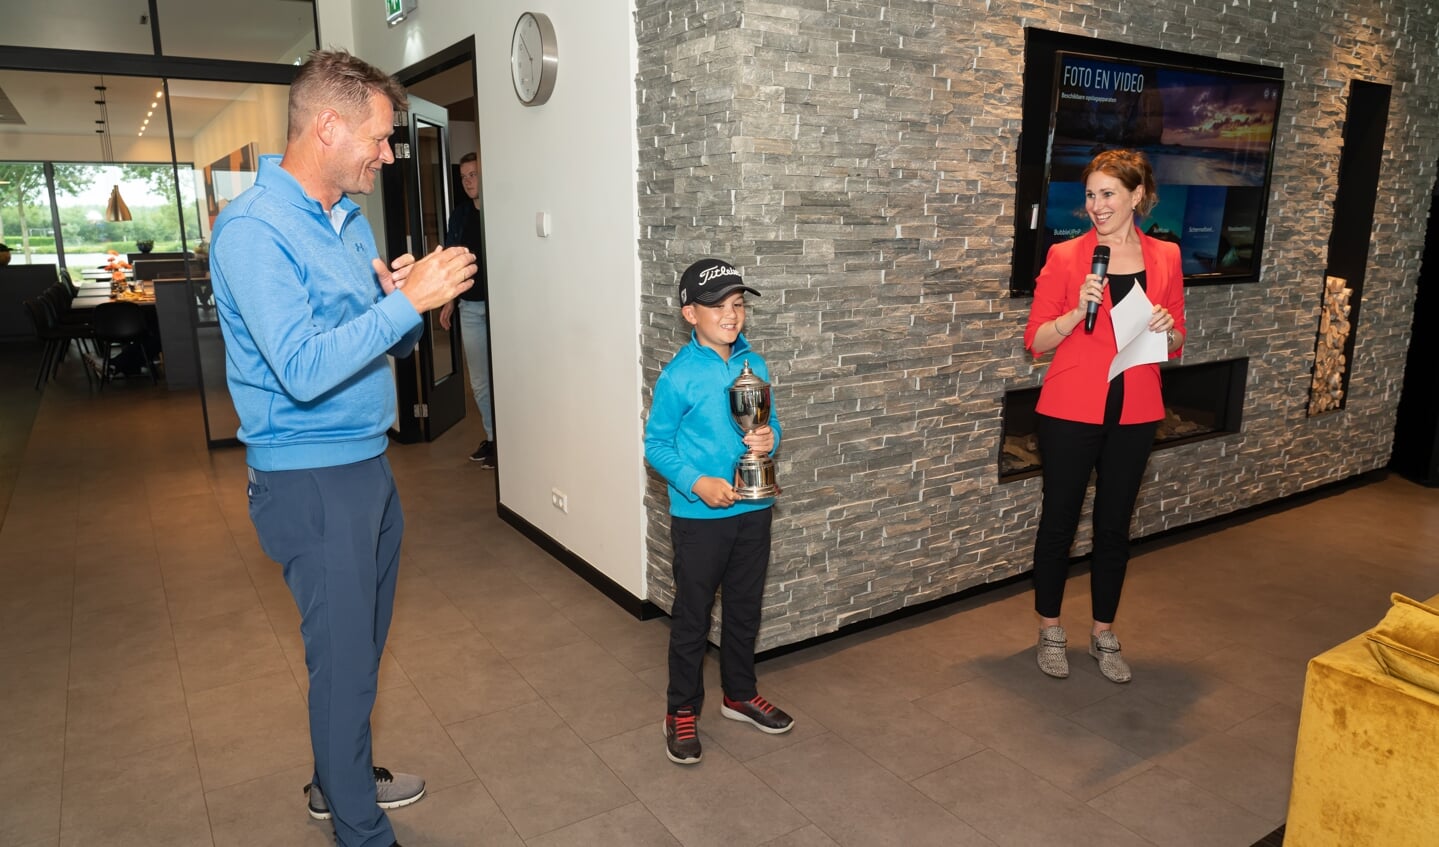 Huldiging Youp Orsel die Europees golfkampioen in de categorie jongens tot 8 jaar is geworden 